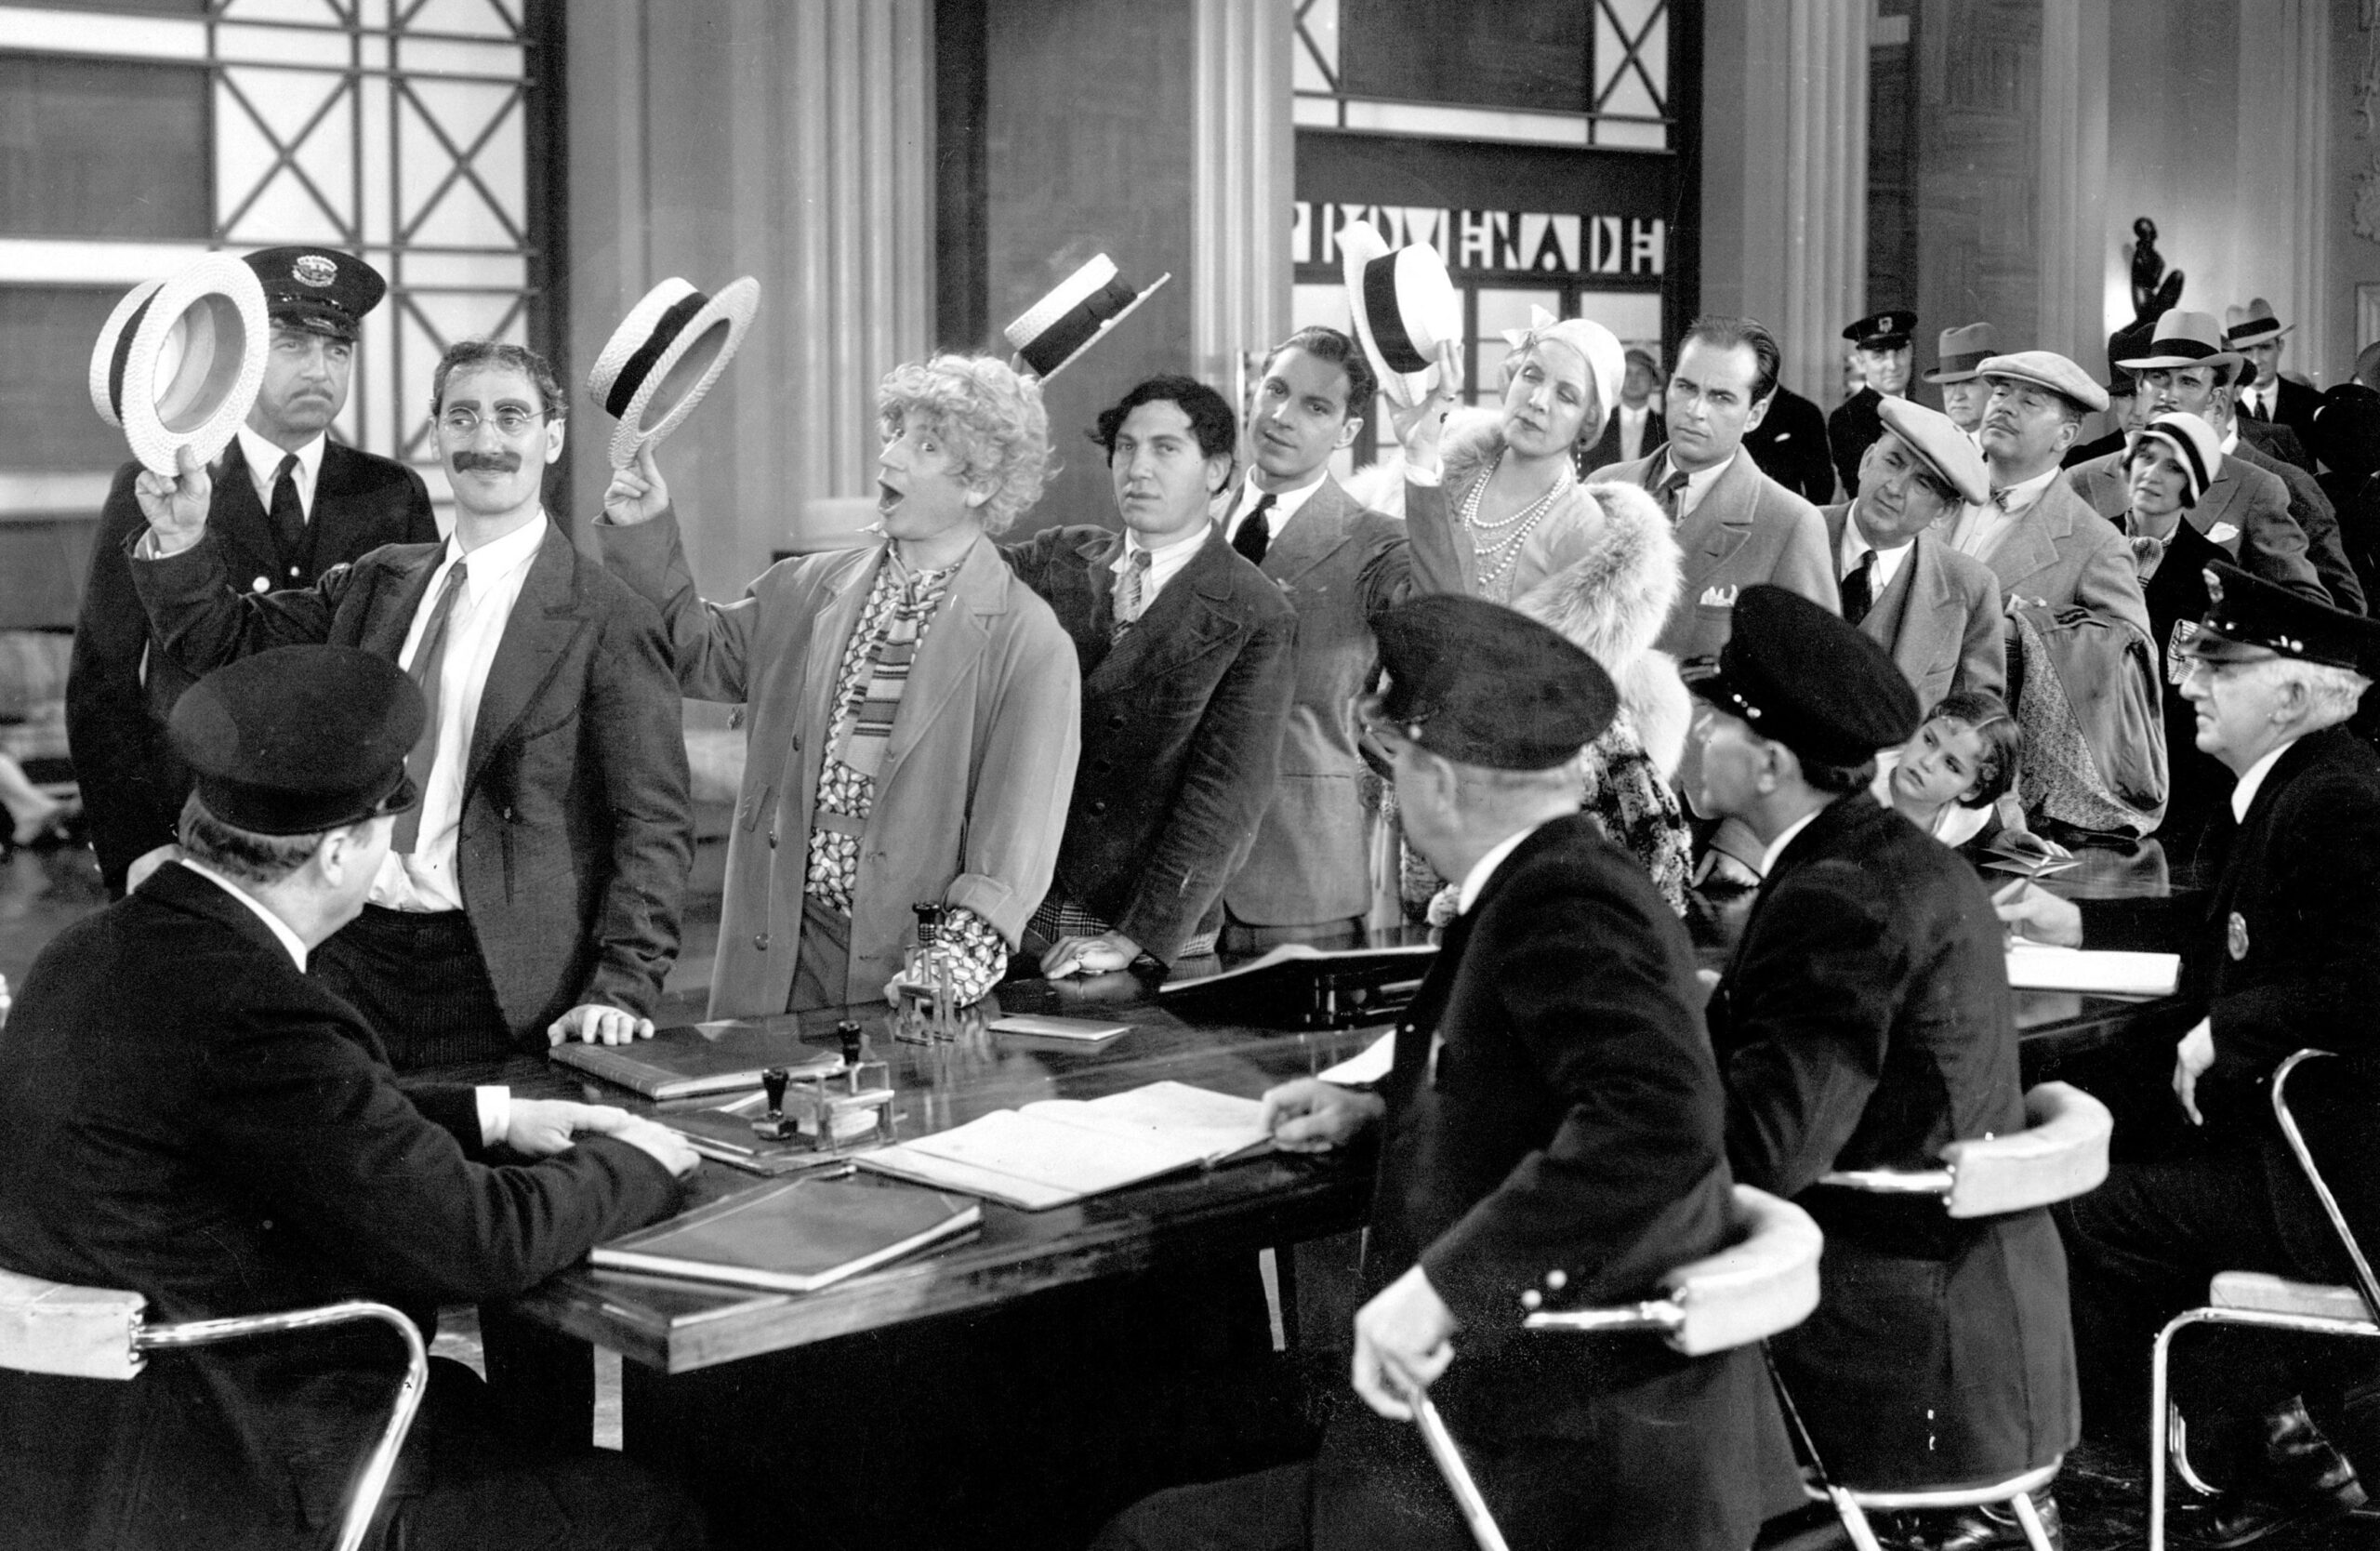 Groucho Marx, Harpo Marx, Chico Marx, and Zeppo Marx in Monkey Business.